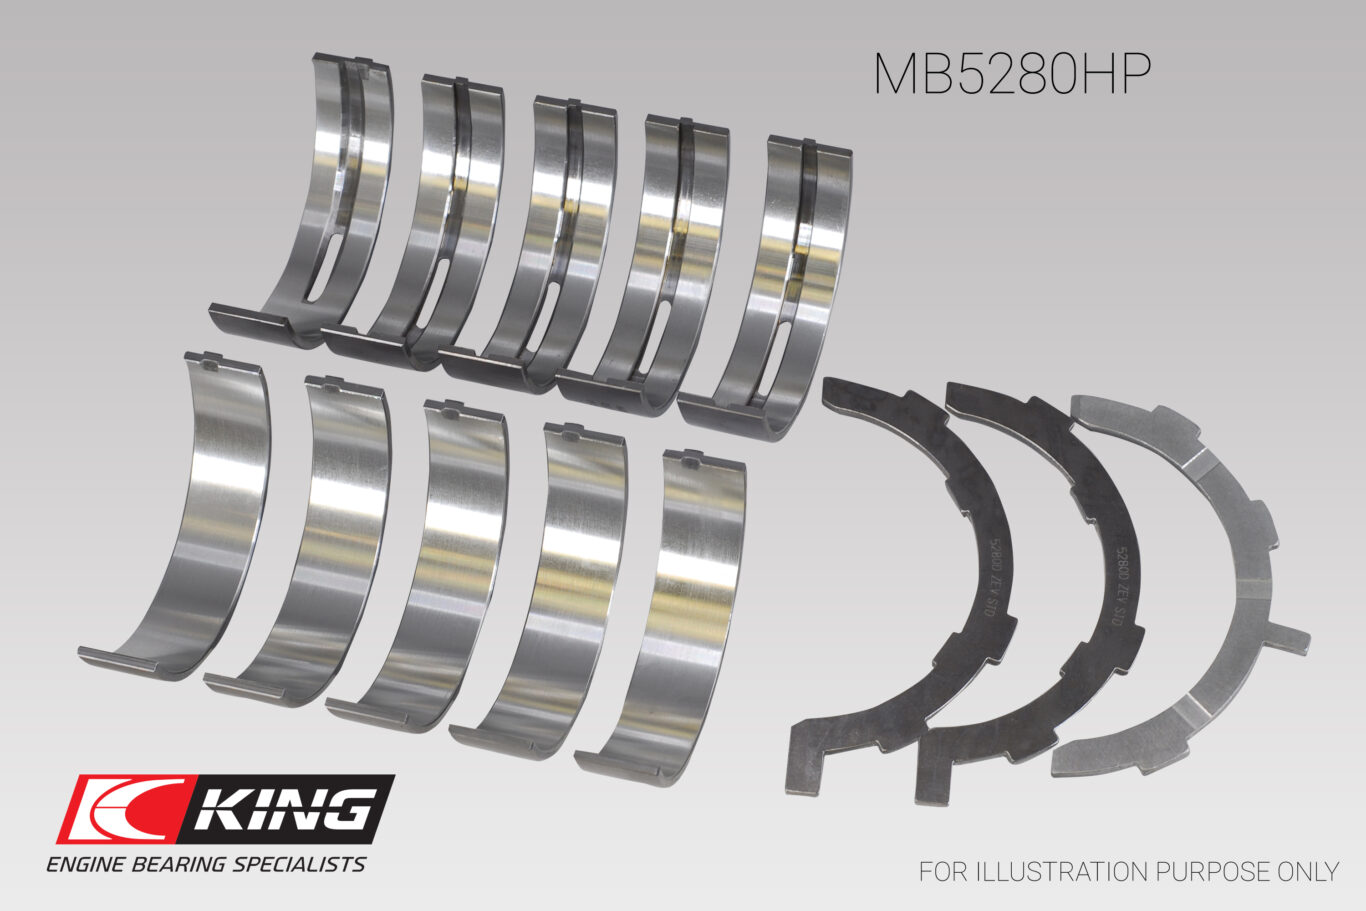 King Engine Bearings MB5280HP Crankshaft Main Bearing Set 